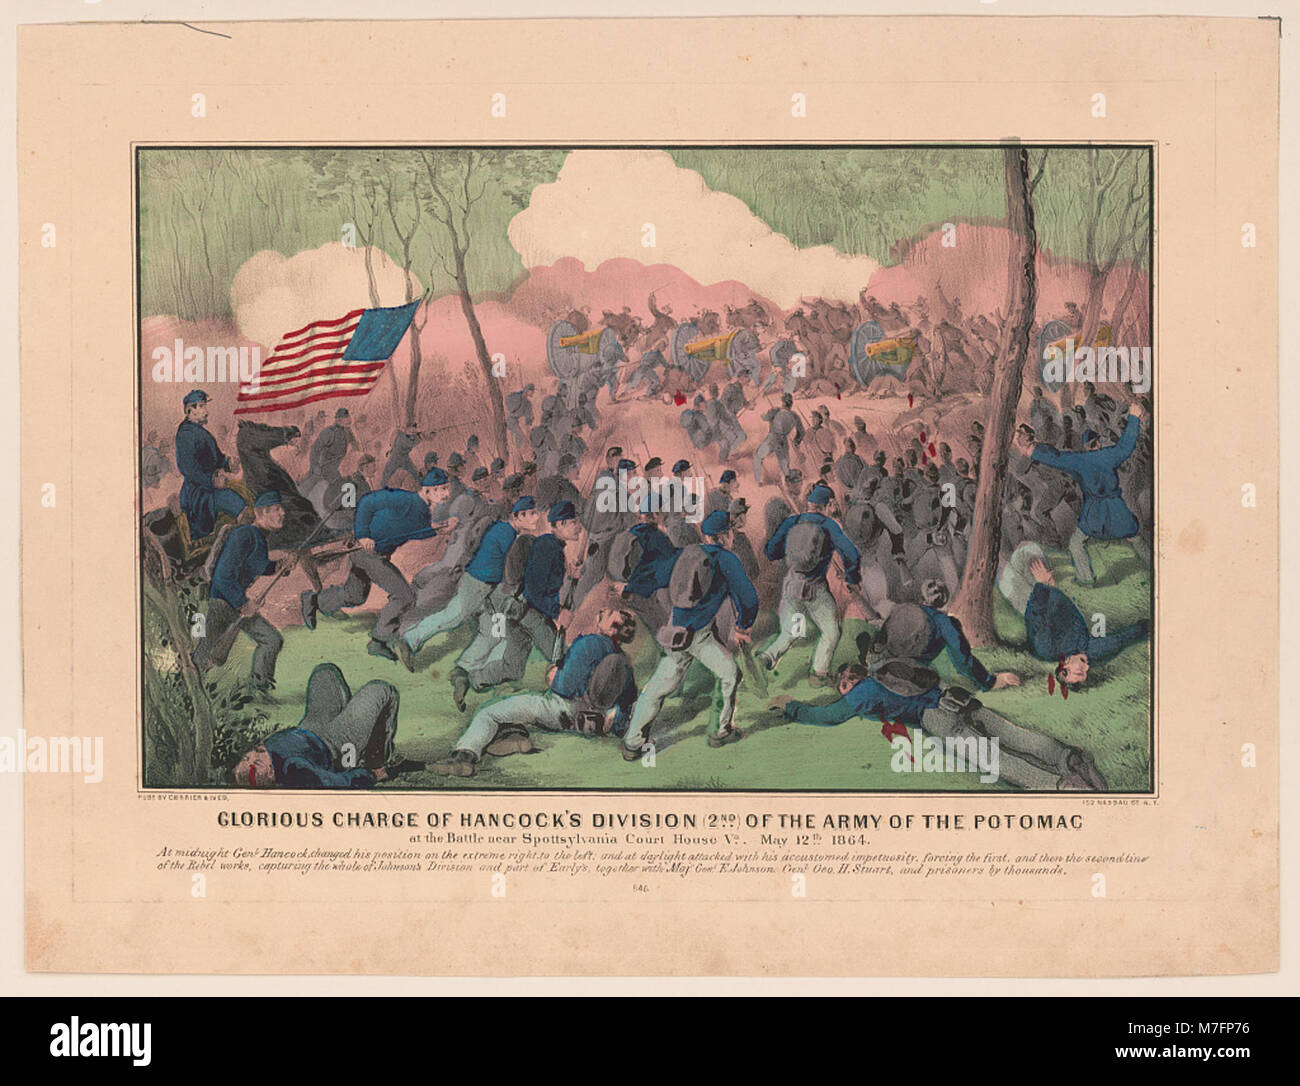 Carica gloriosa di Hancock la divisione (2a) dell'esercito del Potomac- alla battaglia nei pressi di Spottsylvania Court House Va., 12 maggio 1864 LCCN2001700210 Foto Stock